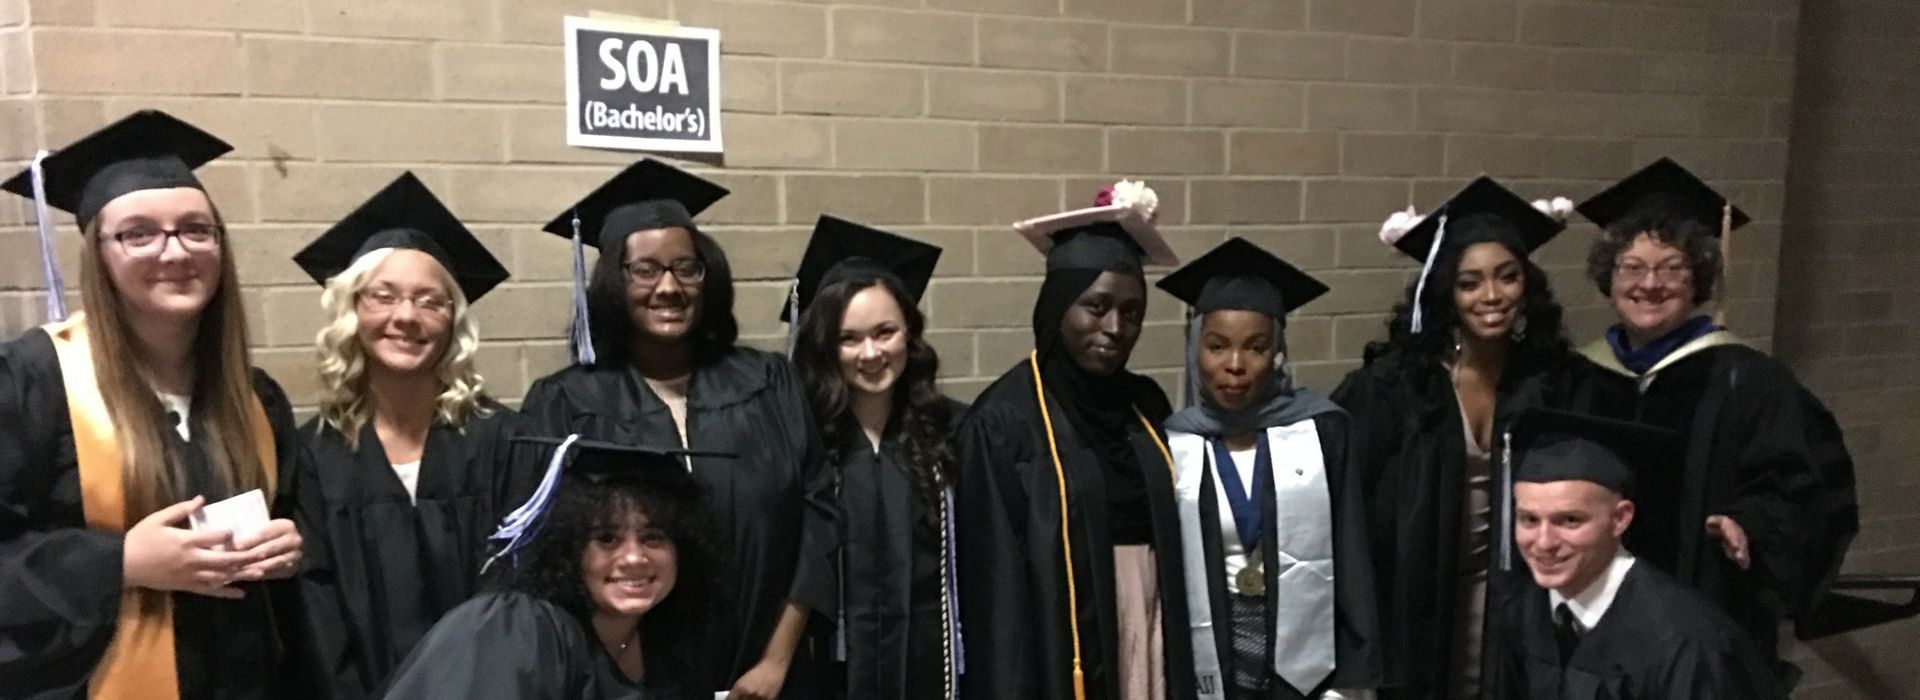 SOA graduates